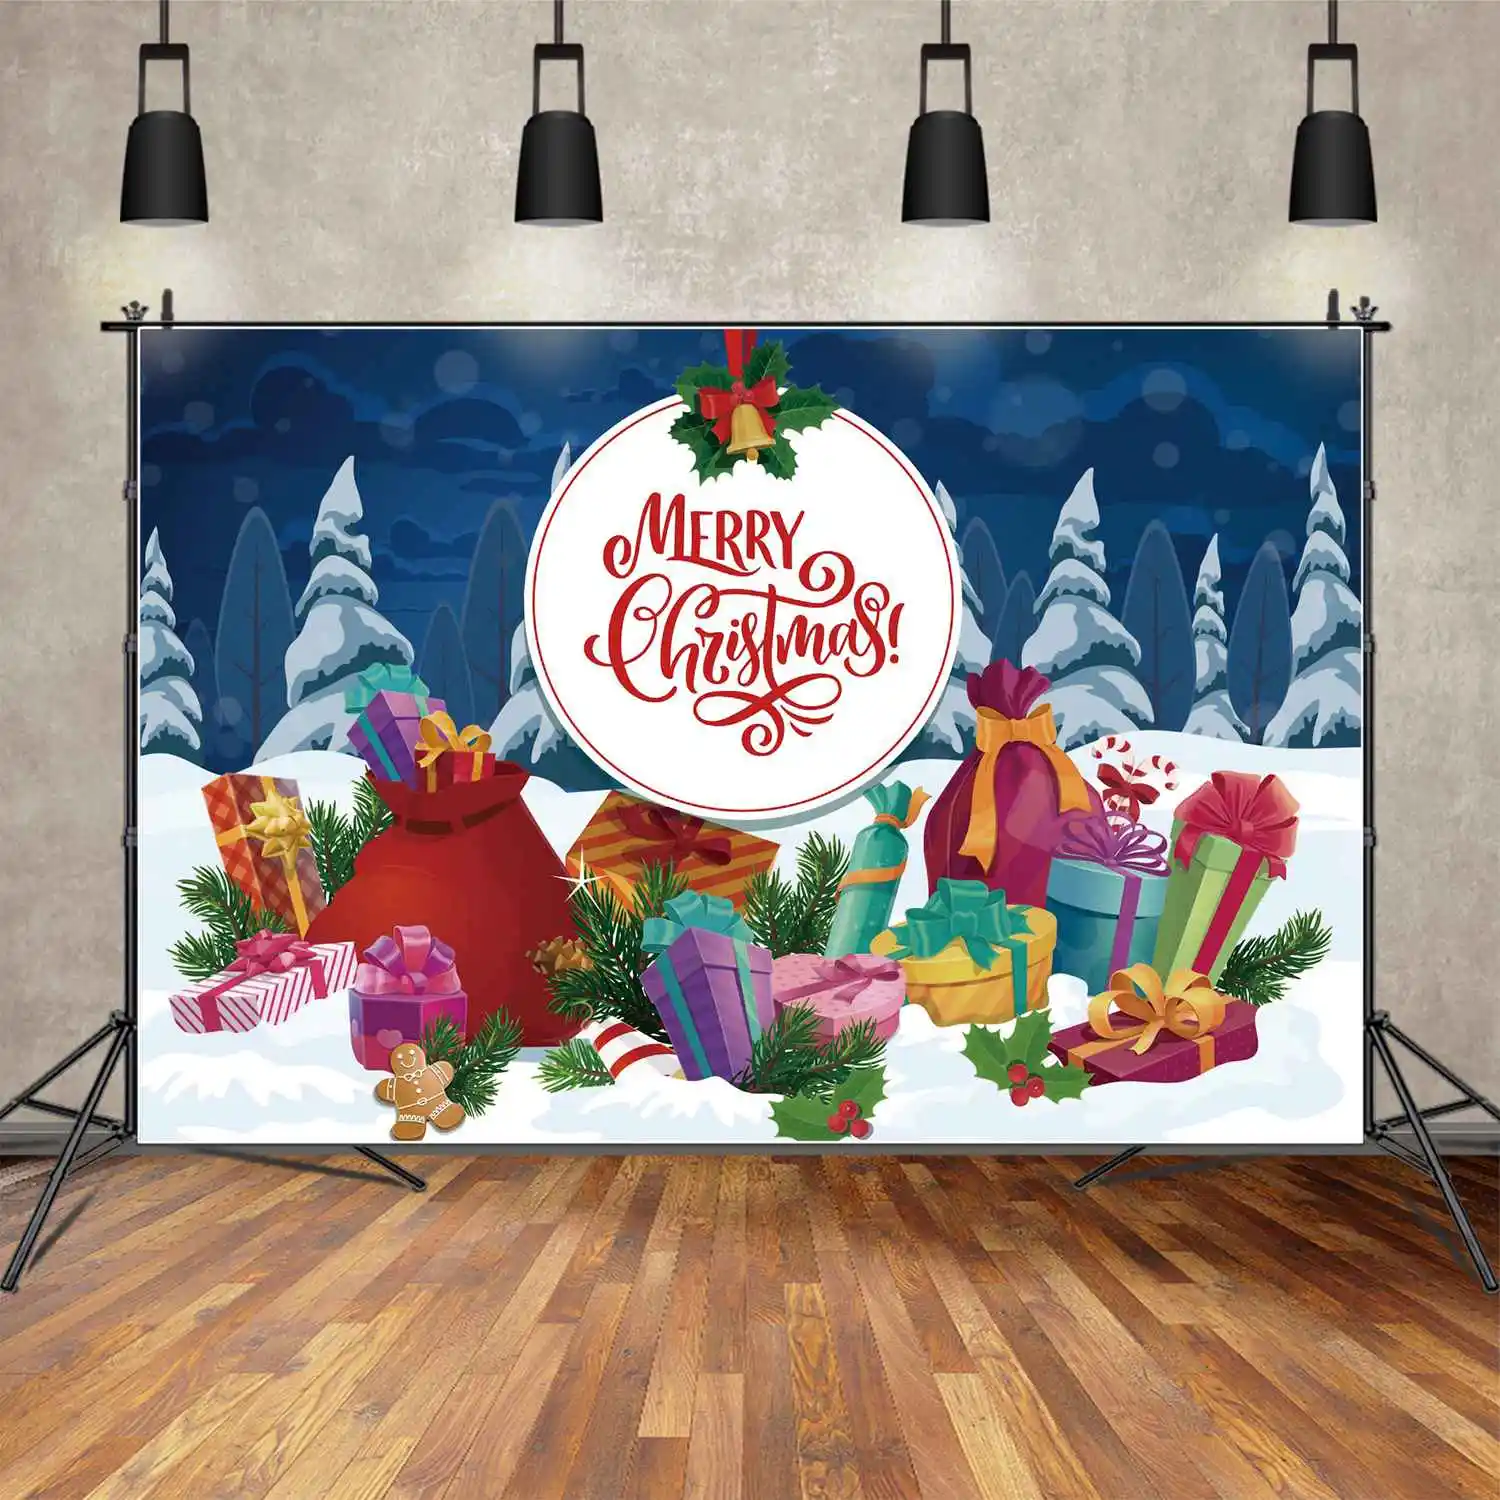 

Фон MOON.QG с надписью "Merry Christmas", круглый детский подарок, фотографический баннер, голубой лес, снег, печенье, сосна, Декор, фотобудка